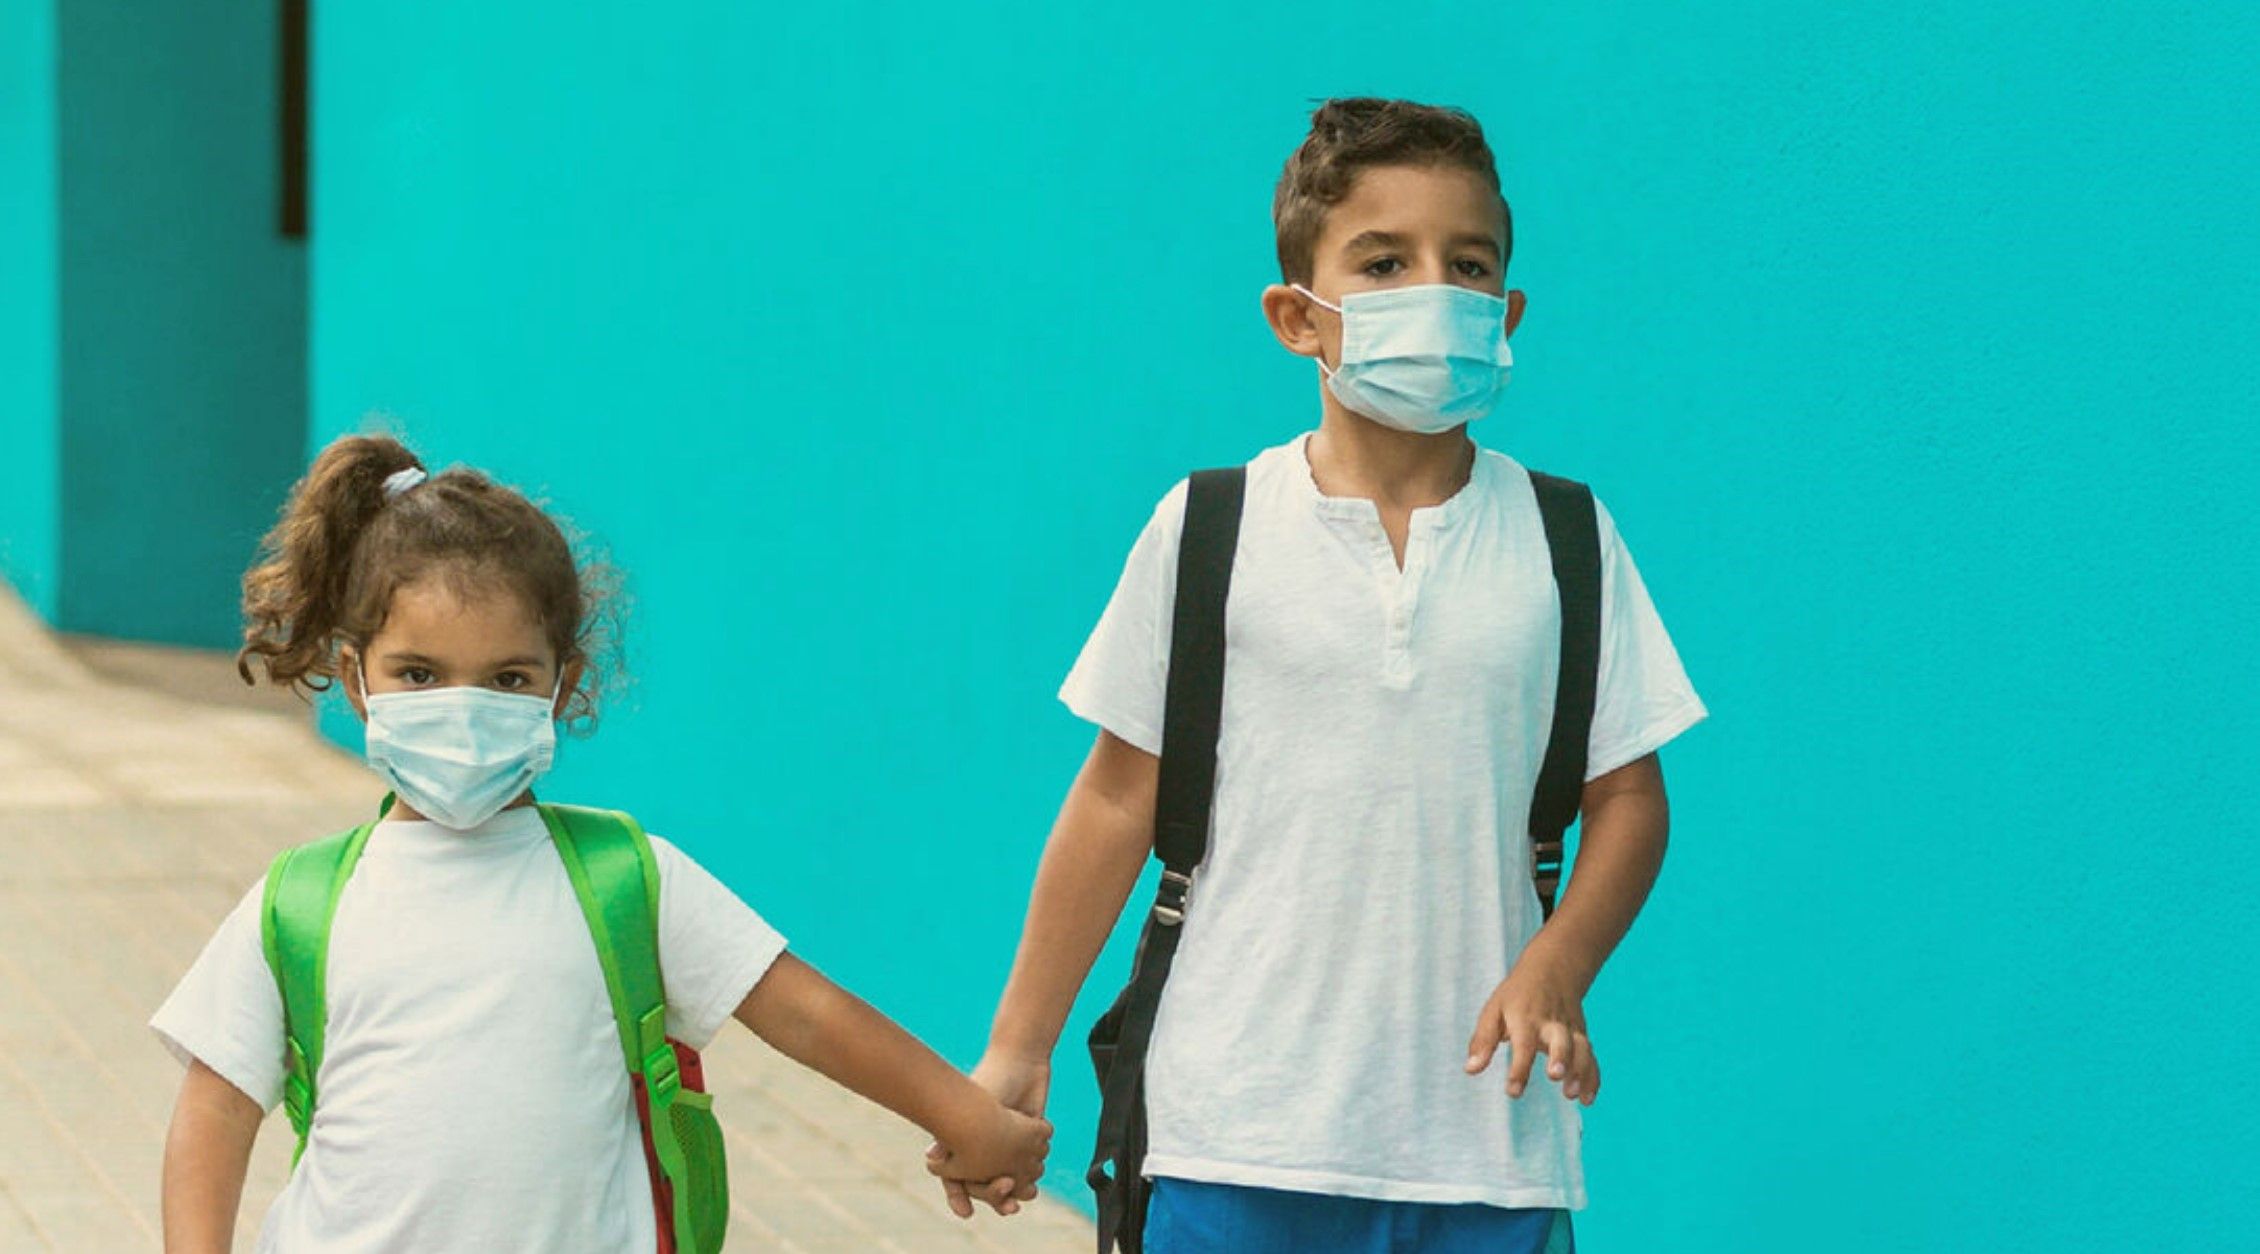 أبوظبي تطلق مبادرة "المدارس الزرقاء" استنادًا إلى معدلات التطعيم ضد فيروس كورونا داخل المدارس